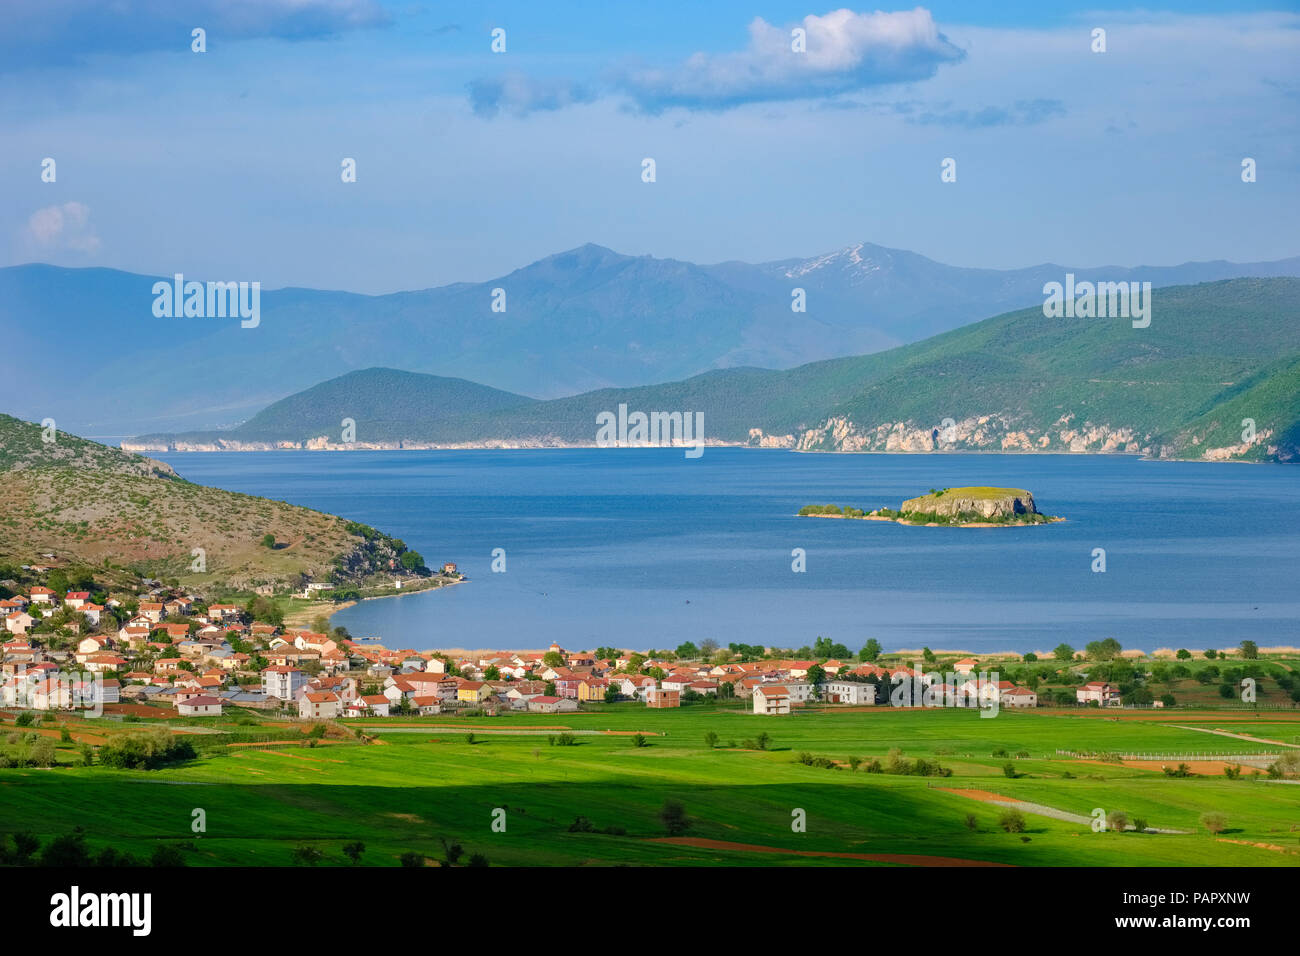 Albanien, Prespa Prespa See National Park, in der Nähe von Korca, Dorf und Liqenas Maligrad Insel, Griechenland und Mazedonien im Hintergrund Stockfoto